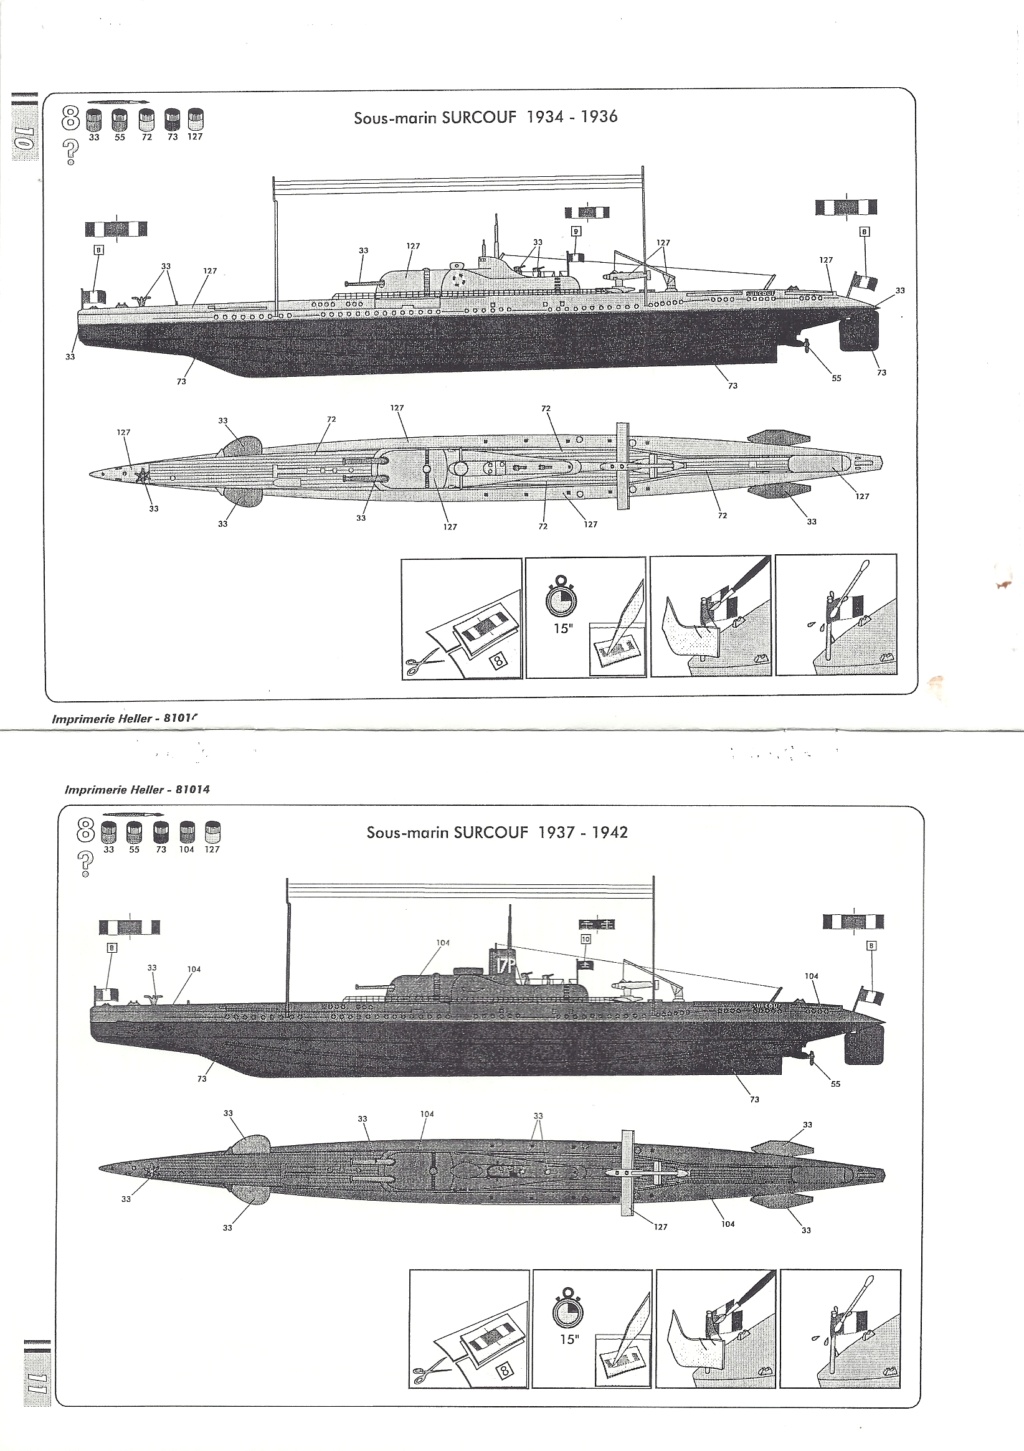 Croiseur sous marin SURCOUF 1/400ème Réf 81014 Notice Hell1933